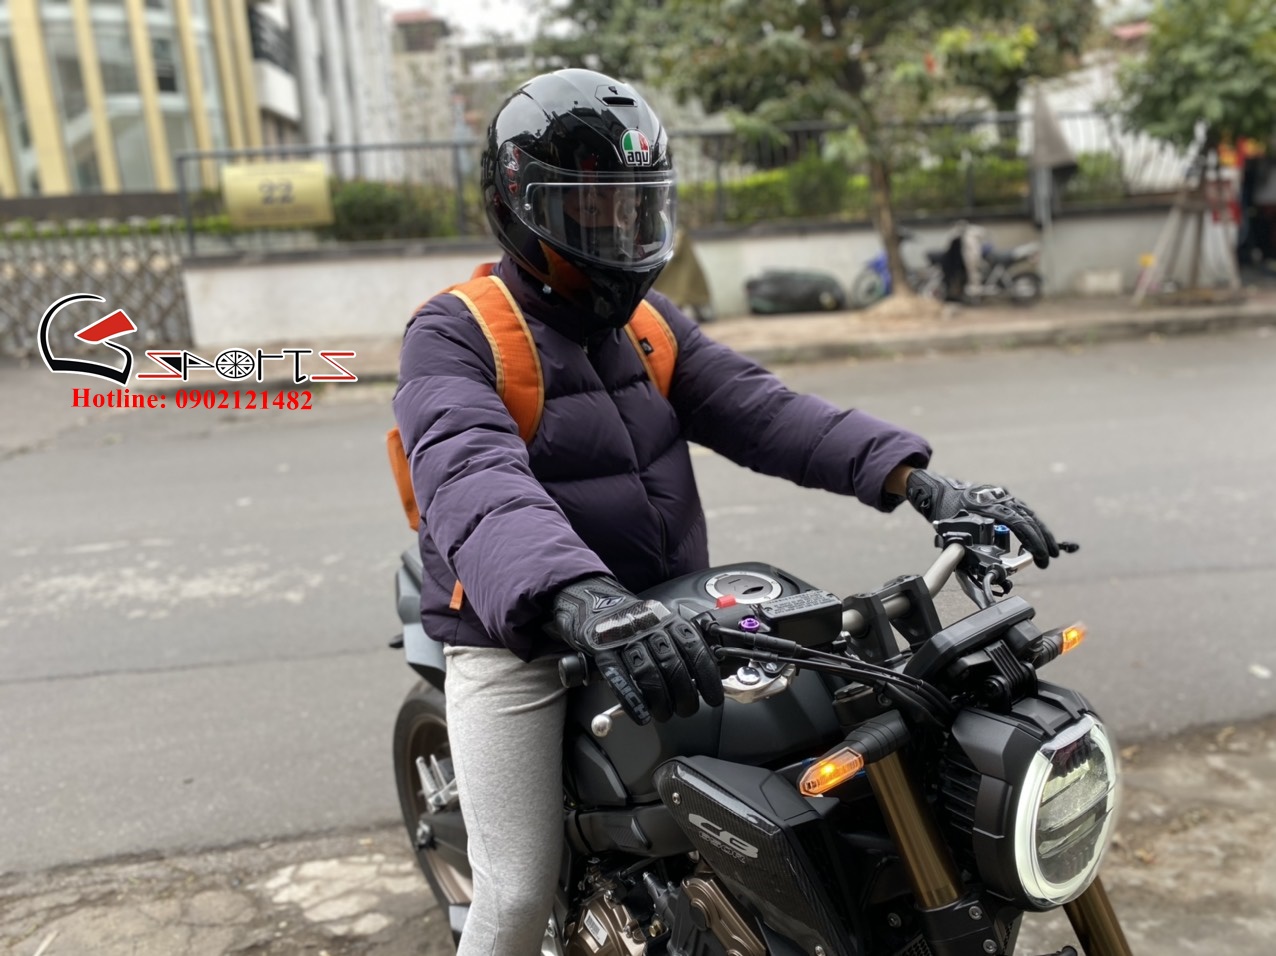 Địa chỉ mua găng tay xe máy uy tín, chất lượng ở Hà Nội